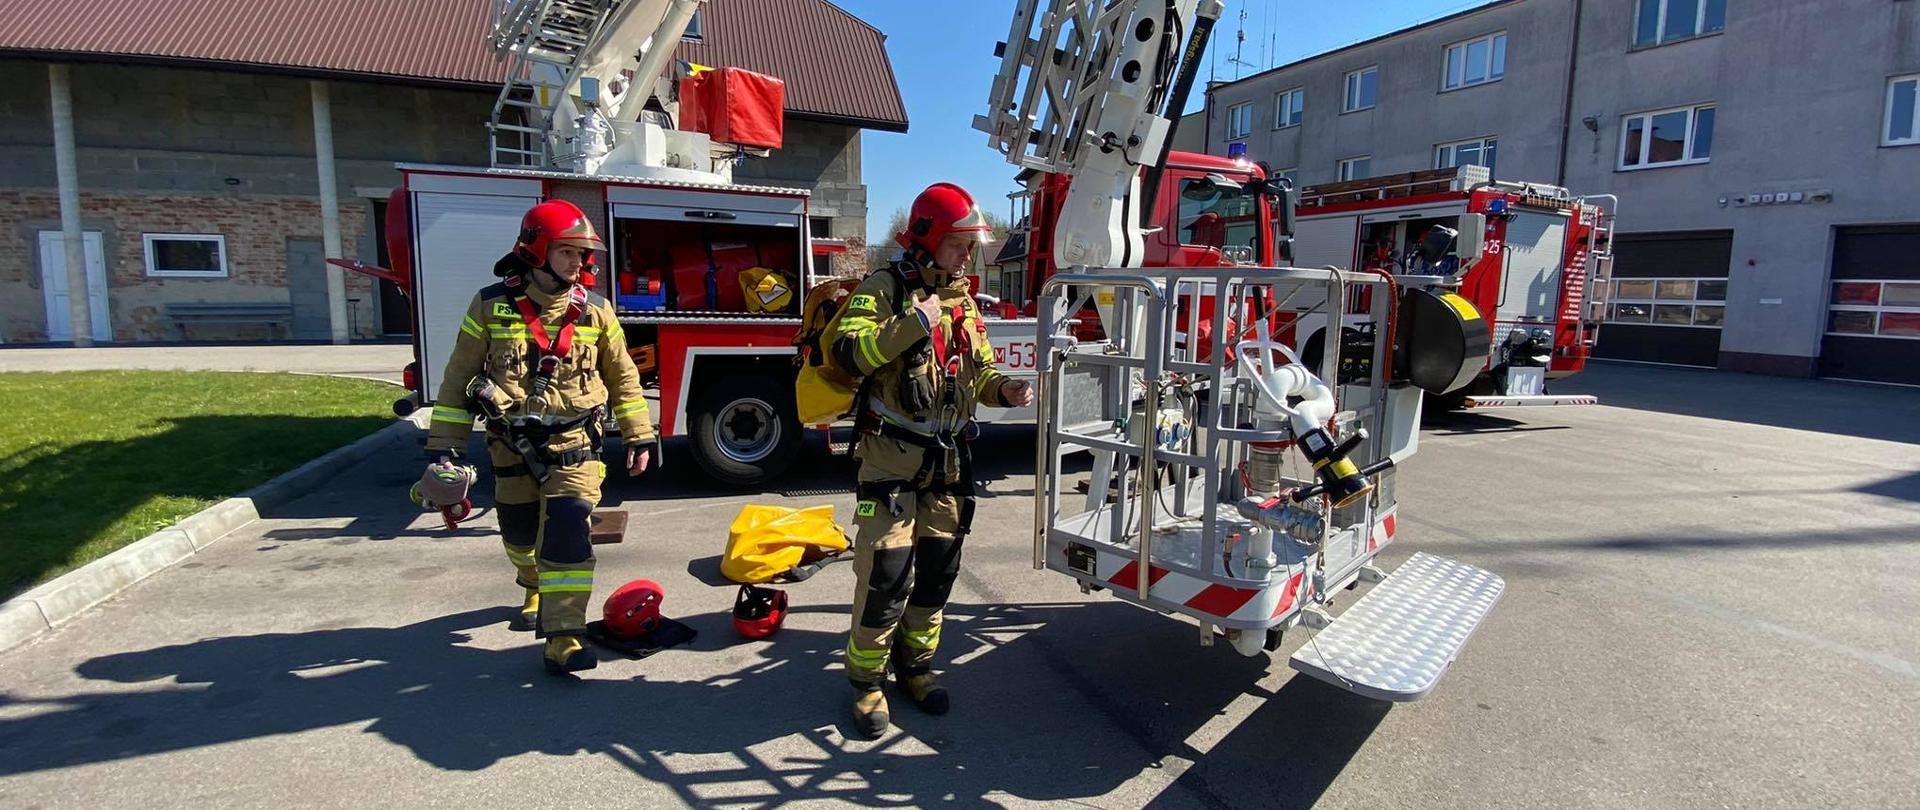 Doskonalenie zawodowe - strażacy są ubrani w ubrania specjalne, stoją obok podnosnika hydraulicznego SHD25